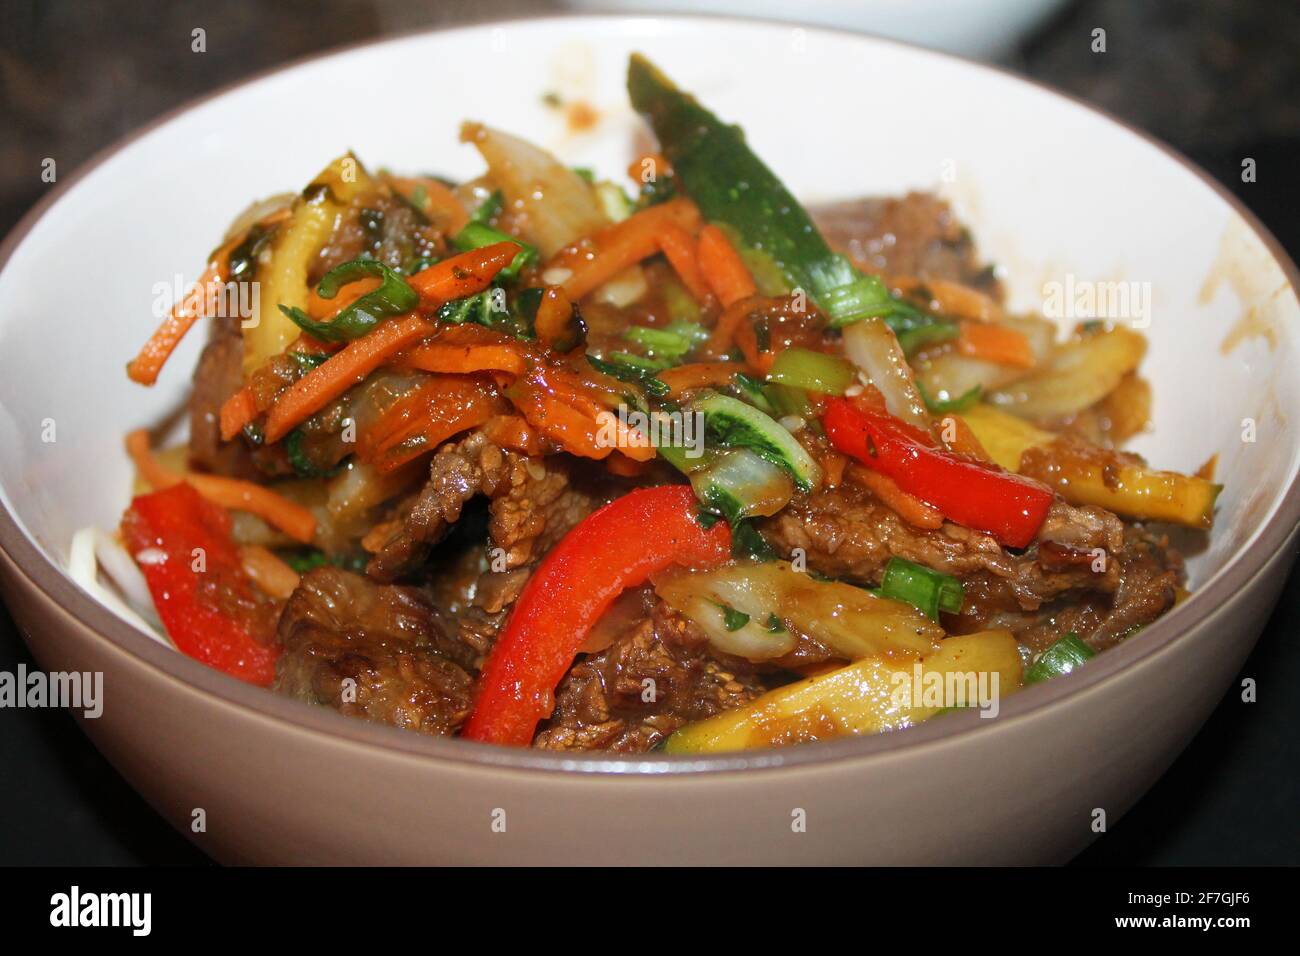 A close-up of the Korean beef stir-fry, Bulgogi, in a bowl. Stock Photo